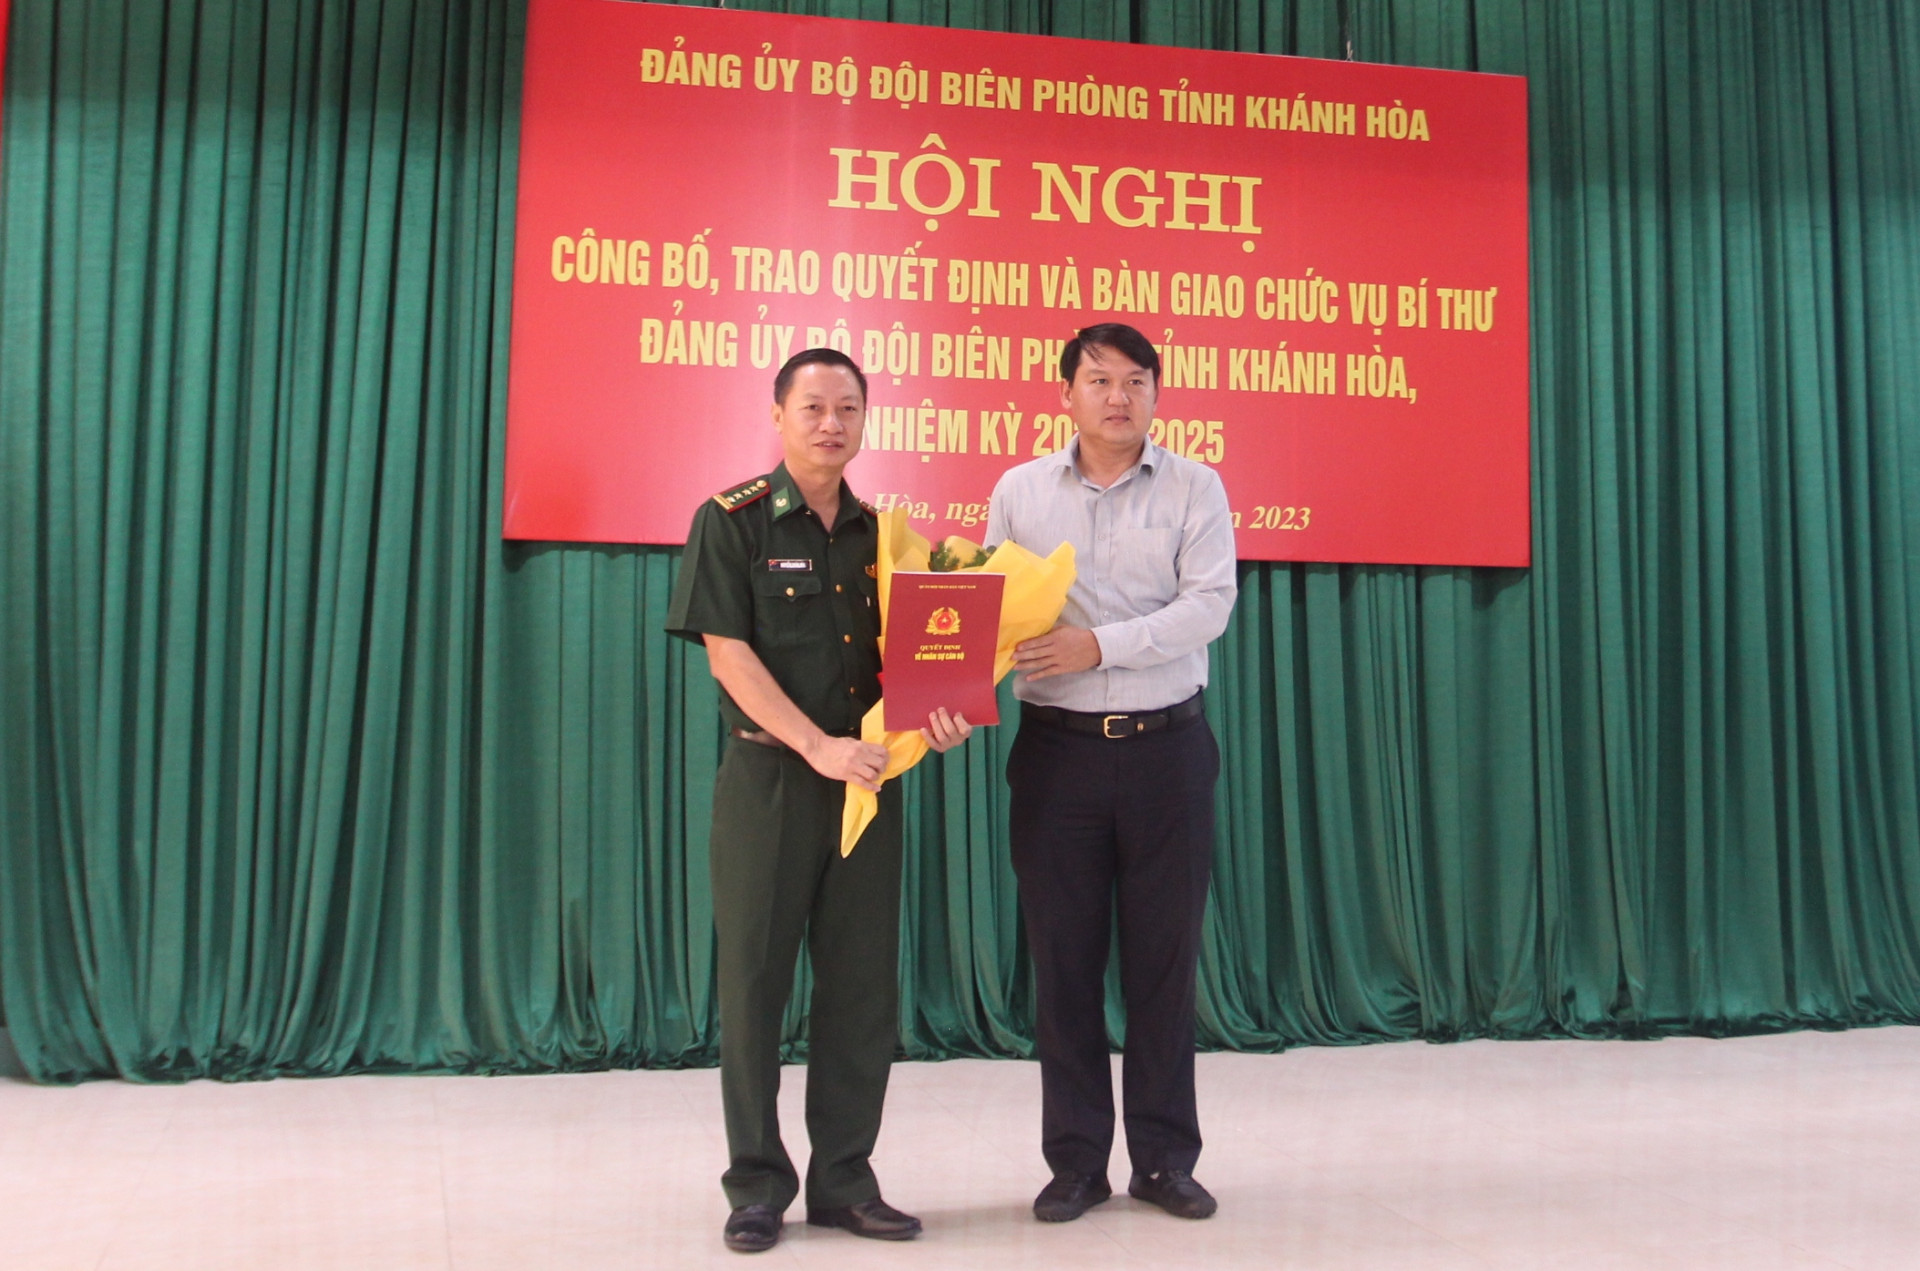 Ông Lương Đức Hải trao quyết định và chúc mừng Đại tá Nguyễn Doãn Hòa.